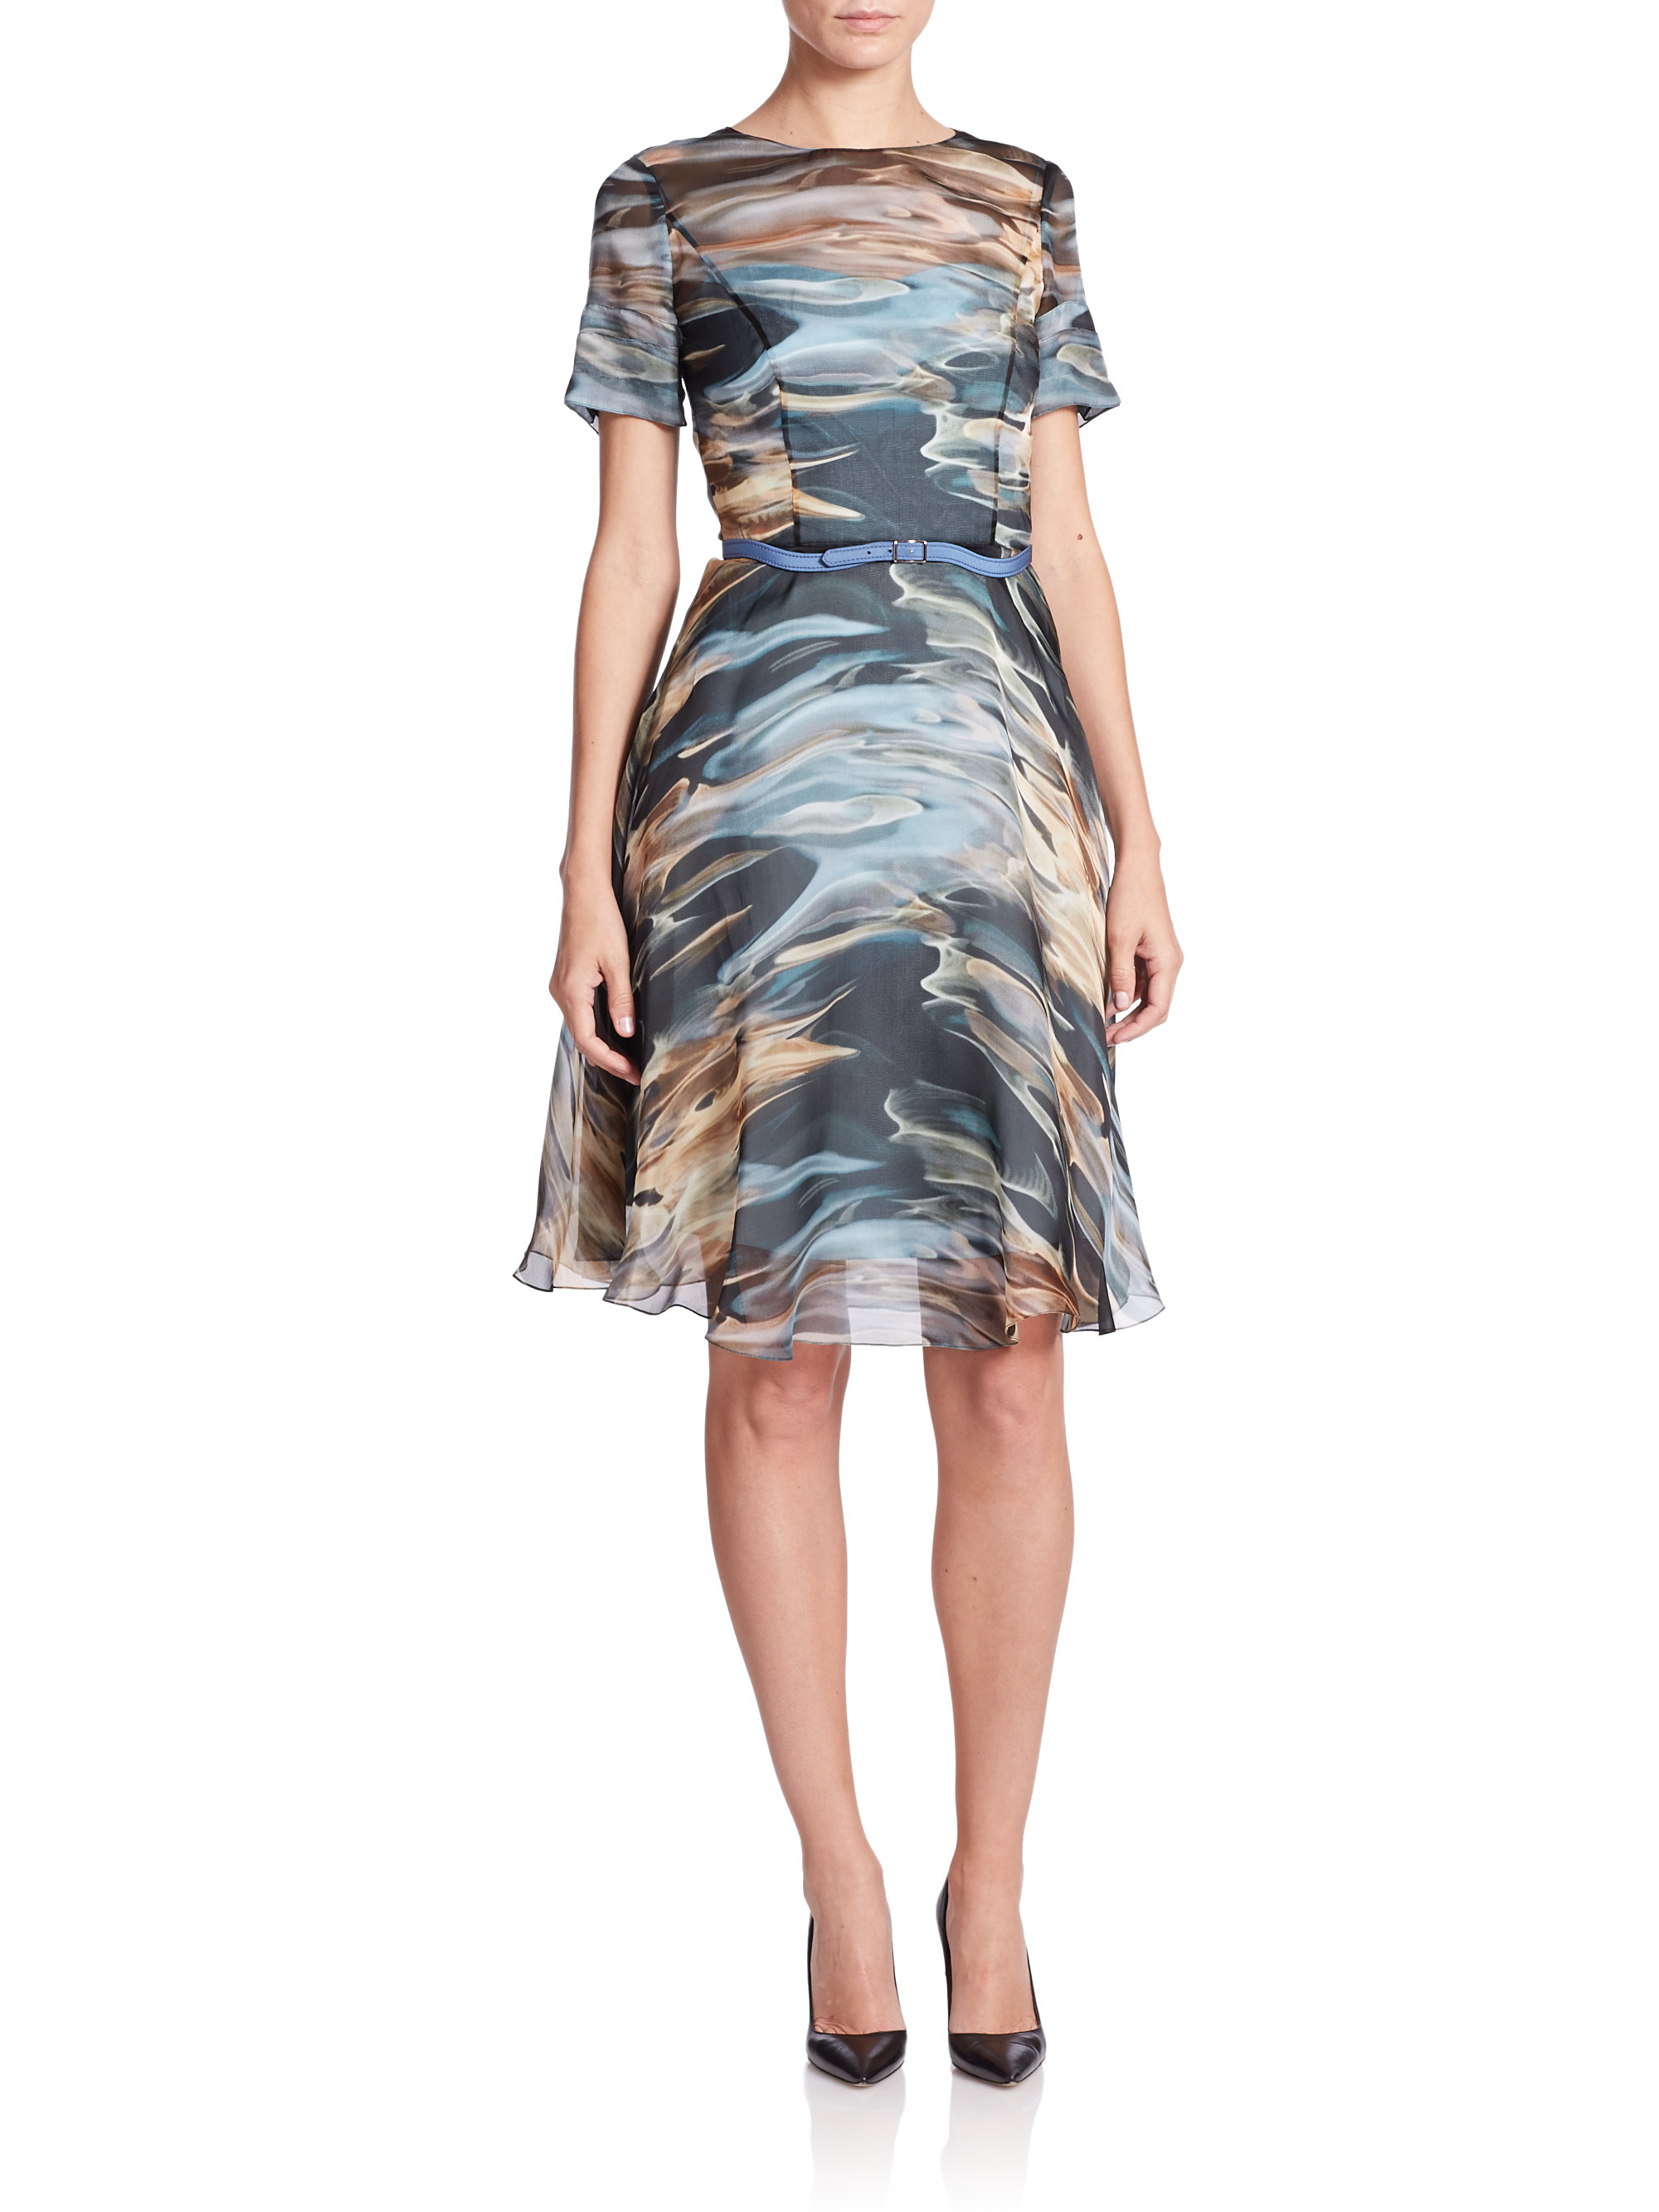 Lyst - Carolina Herrera Liquid Print Silk Organza Dress